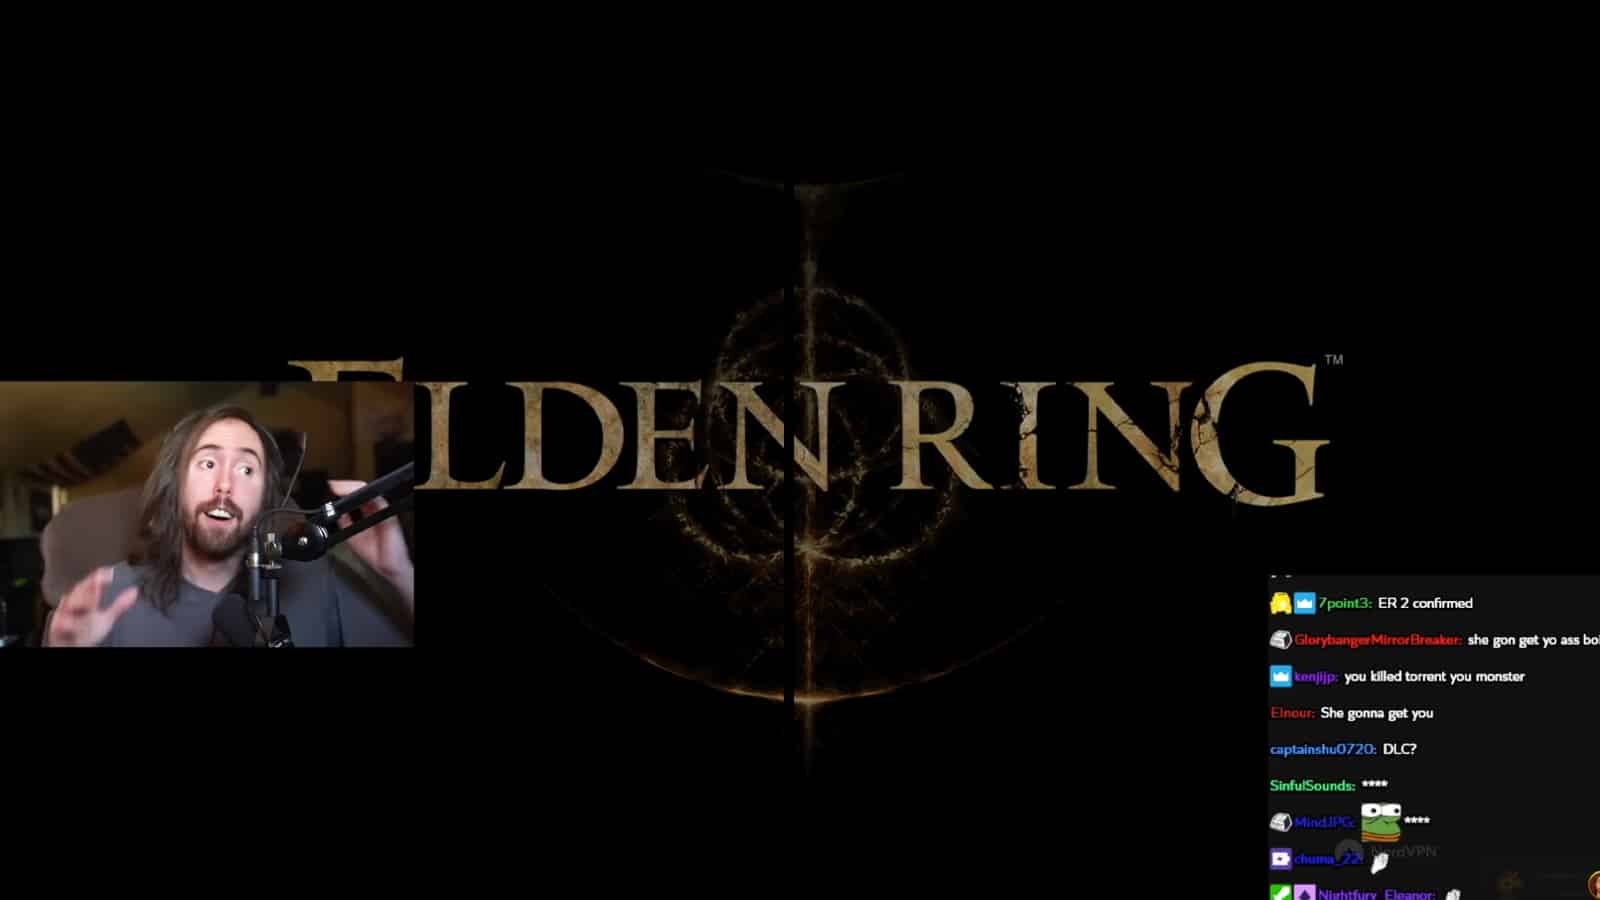 Twitch streamer Asmongold beating Elden Ring screenshot.